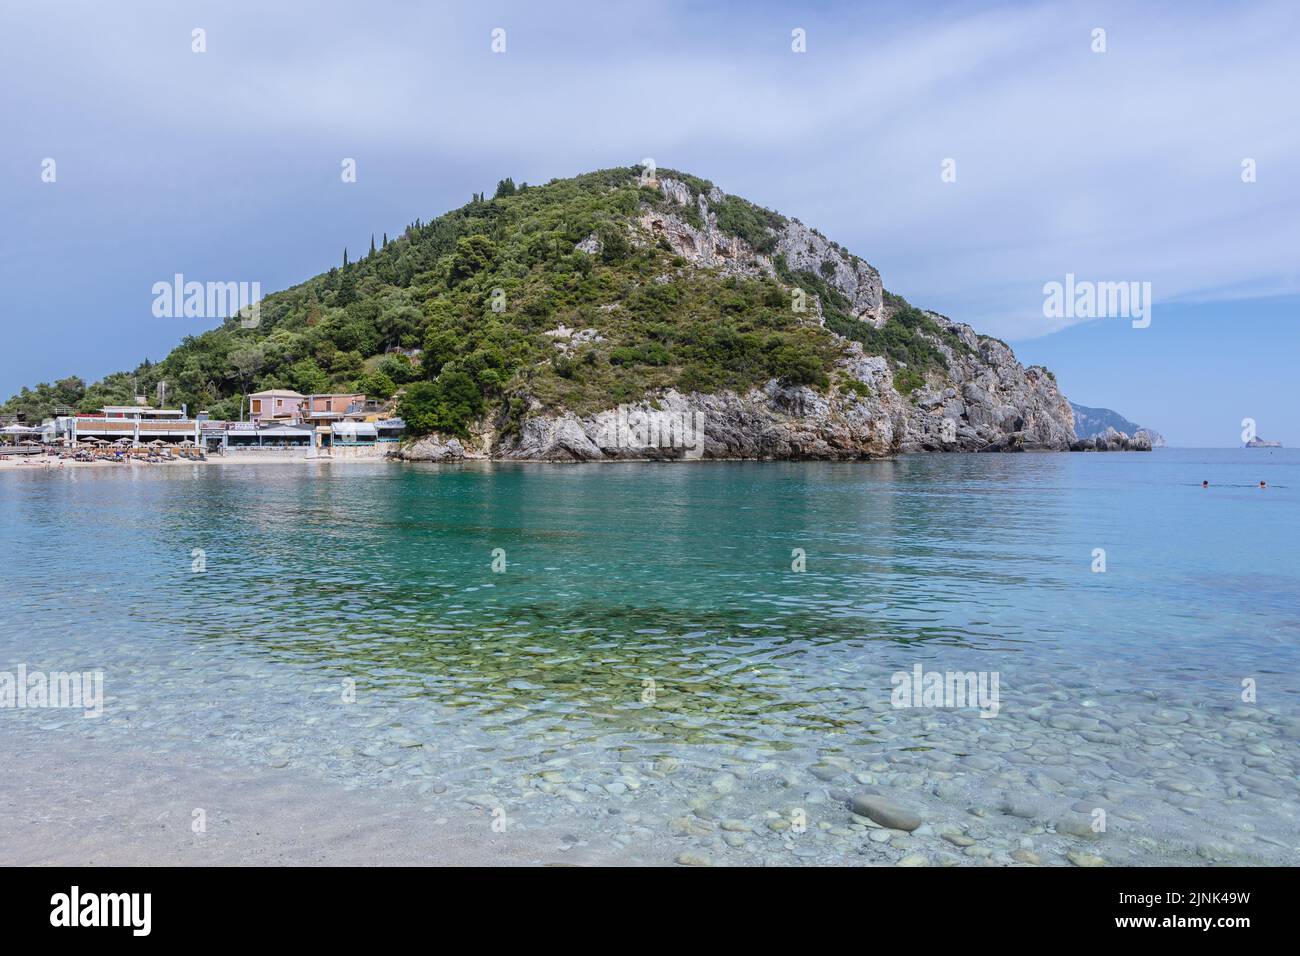 Vista desde la playa de Agios Spyridona, la playa más grande de Palaiokastritsa famosa ciudad turística en la isla griega de Corfú Foto de stock